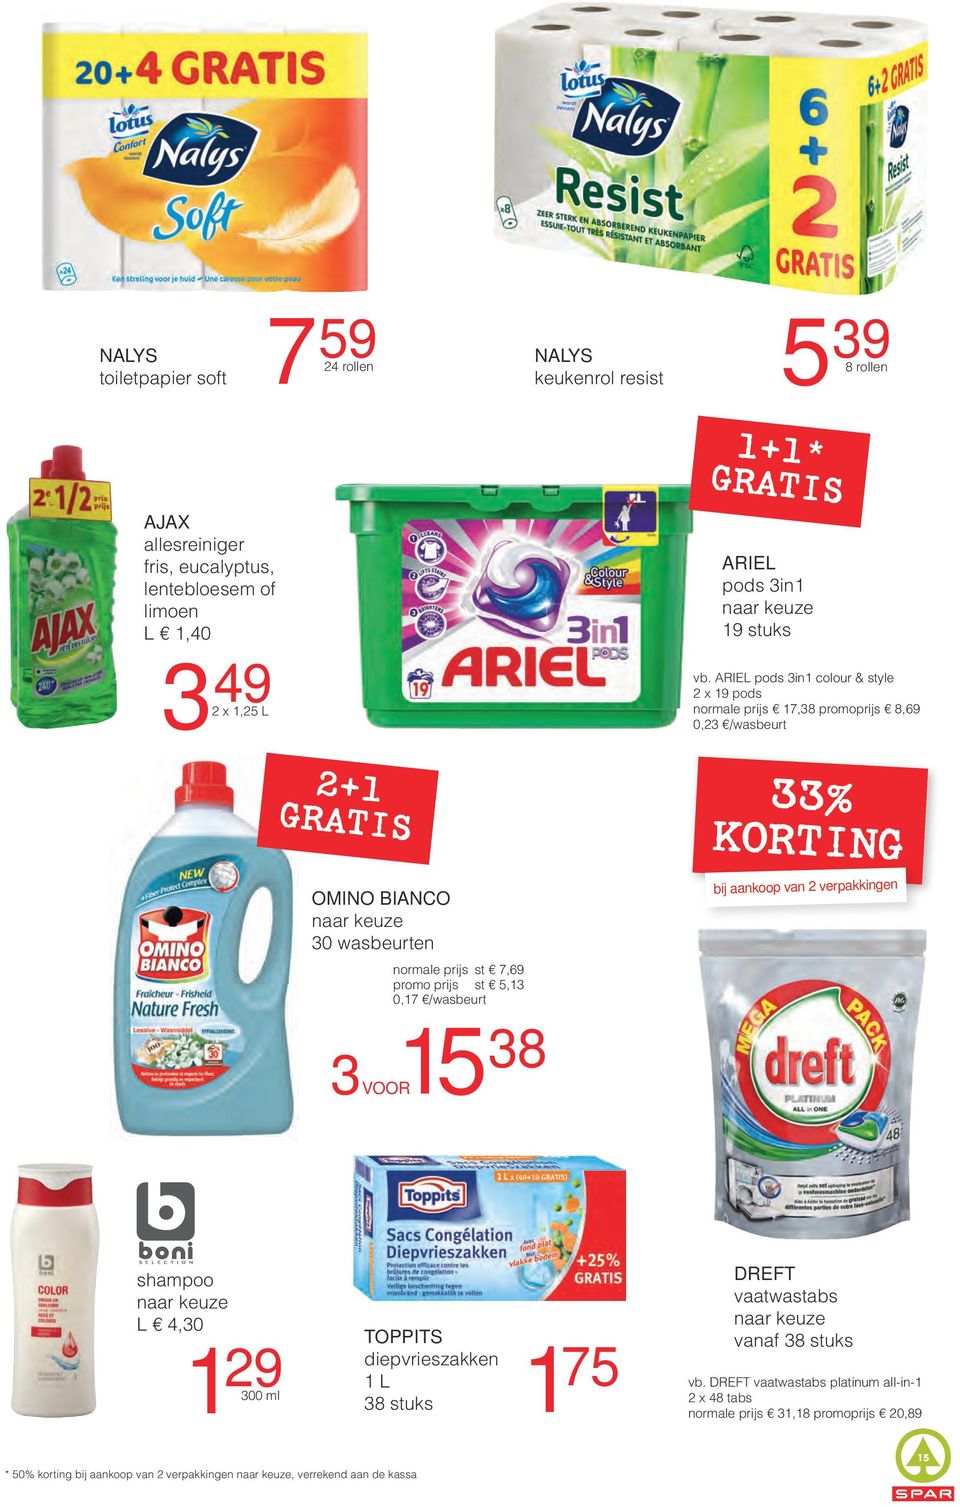 ARIEL pods 3in1 colour & style 2 x 19 pods normale prijs 17,38 promoprijs 8,69 0,23 /wasbeurt 33% KORTING bij aankoop van 2 verpakkingen 3 15 38 voor shampoo L 4,30 1 29 300